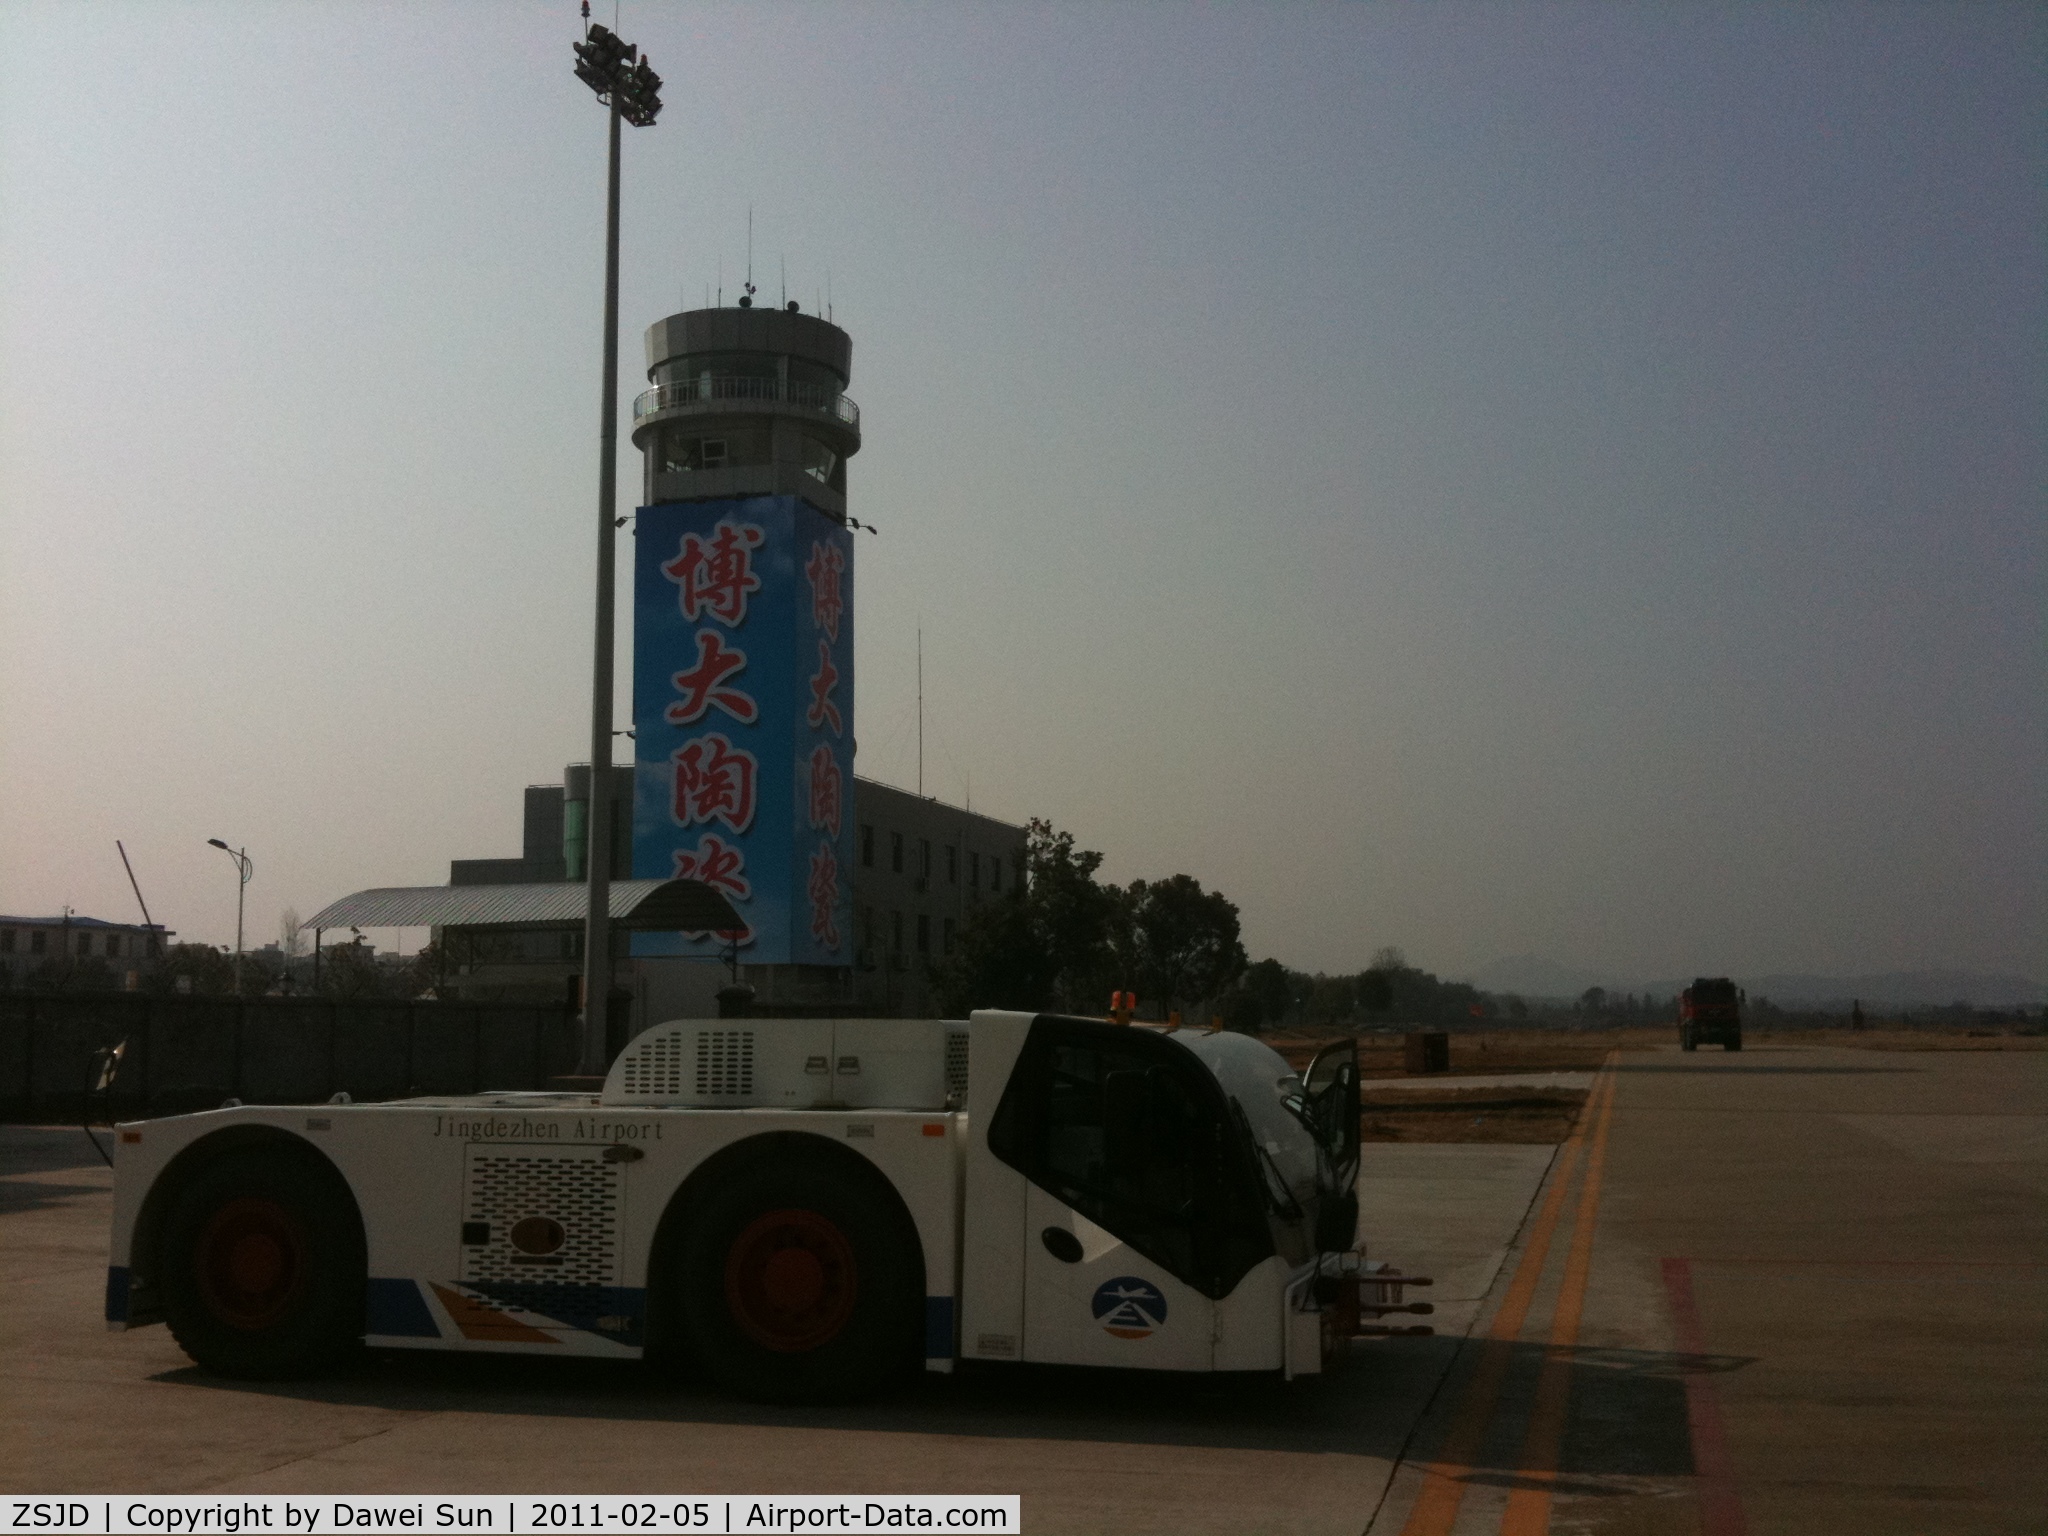 Jingdezhen Airport, Jingdezhen, Jiangxi China (ZSJD) - jingdezhen tower